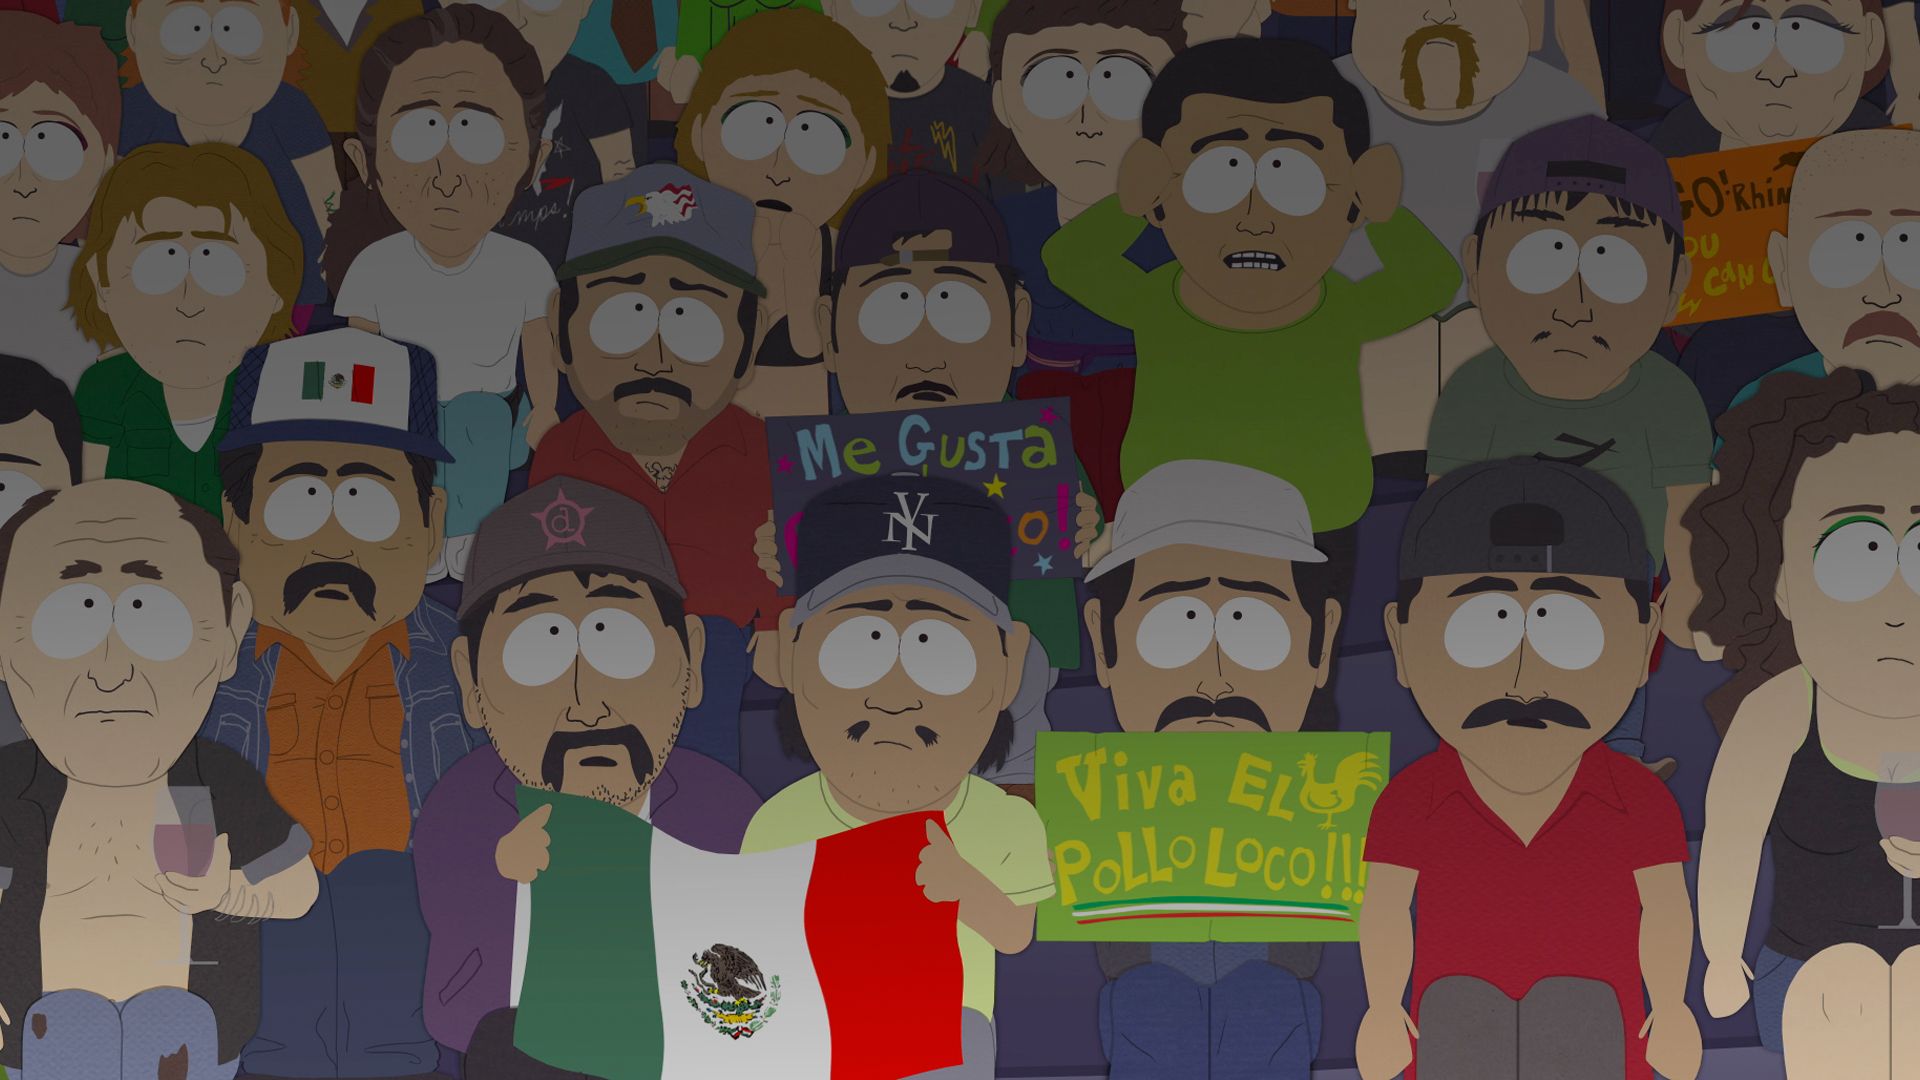 BASTARDOS! - Season 13 Episode 10 - South Park